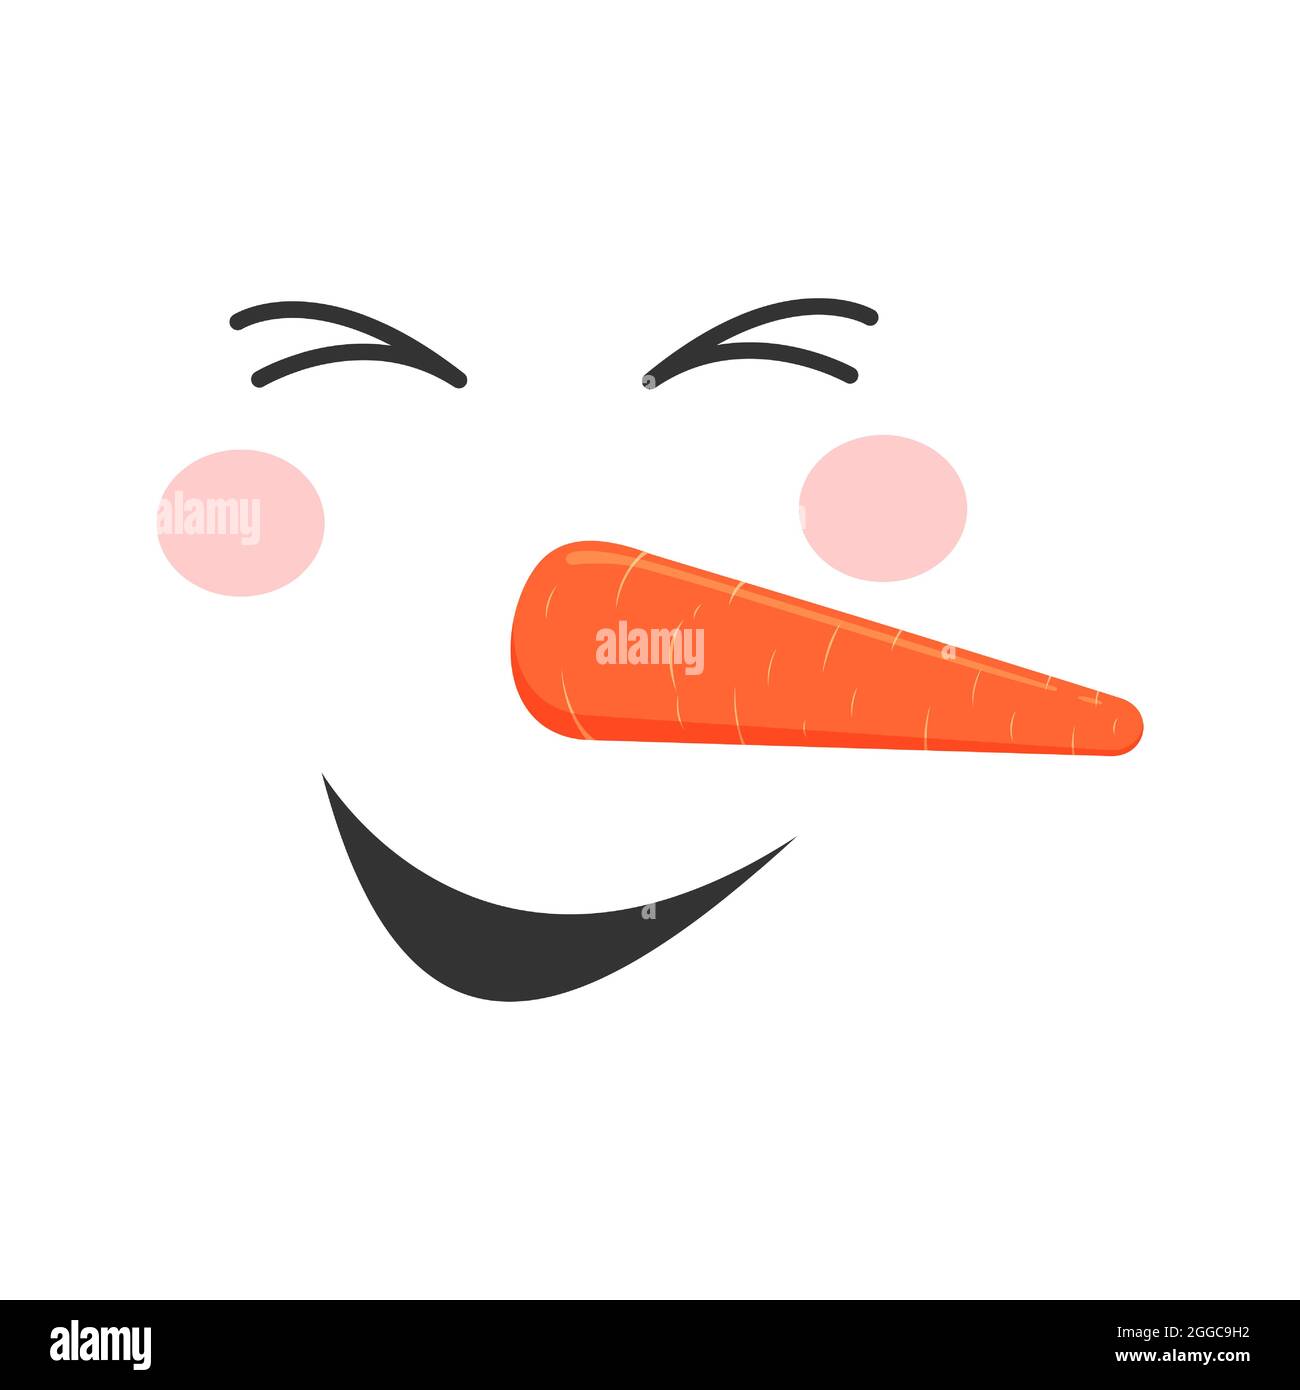 Ridendo faccia di pupazzo di neve. Testa carina di pupazzo di neve con occhi chiusi, bocca sorridente, naso di carota ed emozione di godimento. Design per le vacanze invernali. Illustrazione di un cartoon vettoriale. Illustrazione Vettoriale